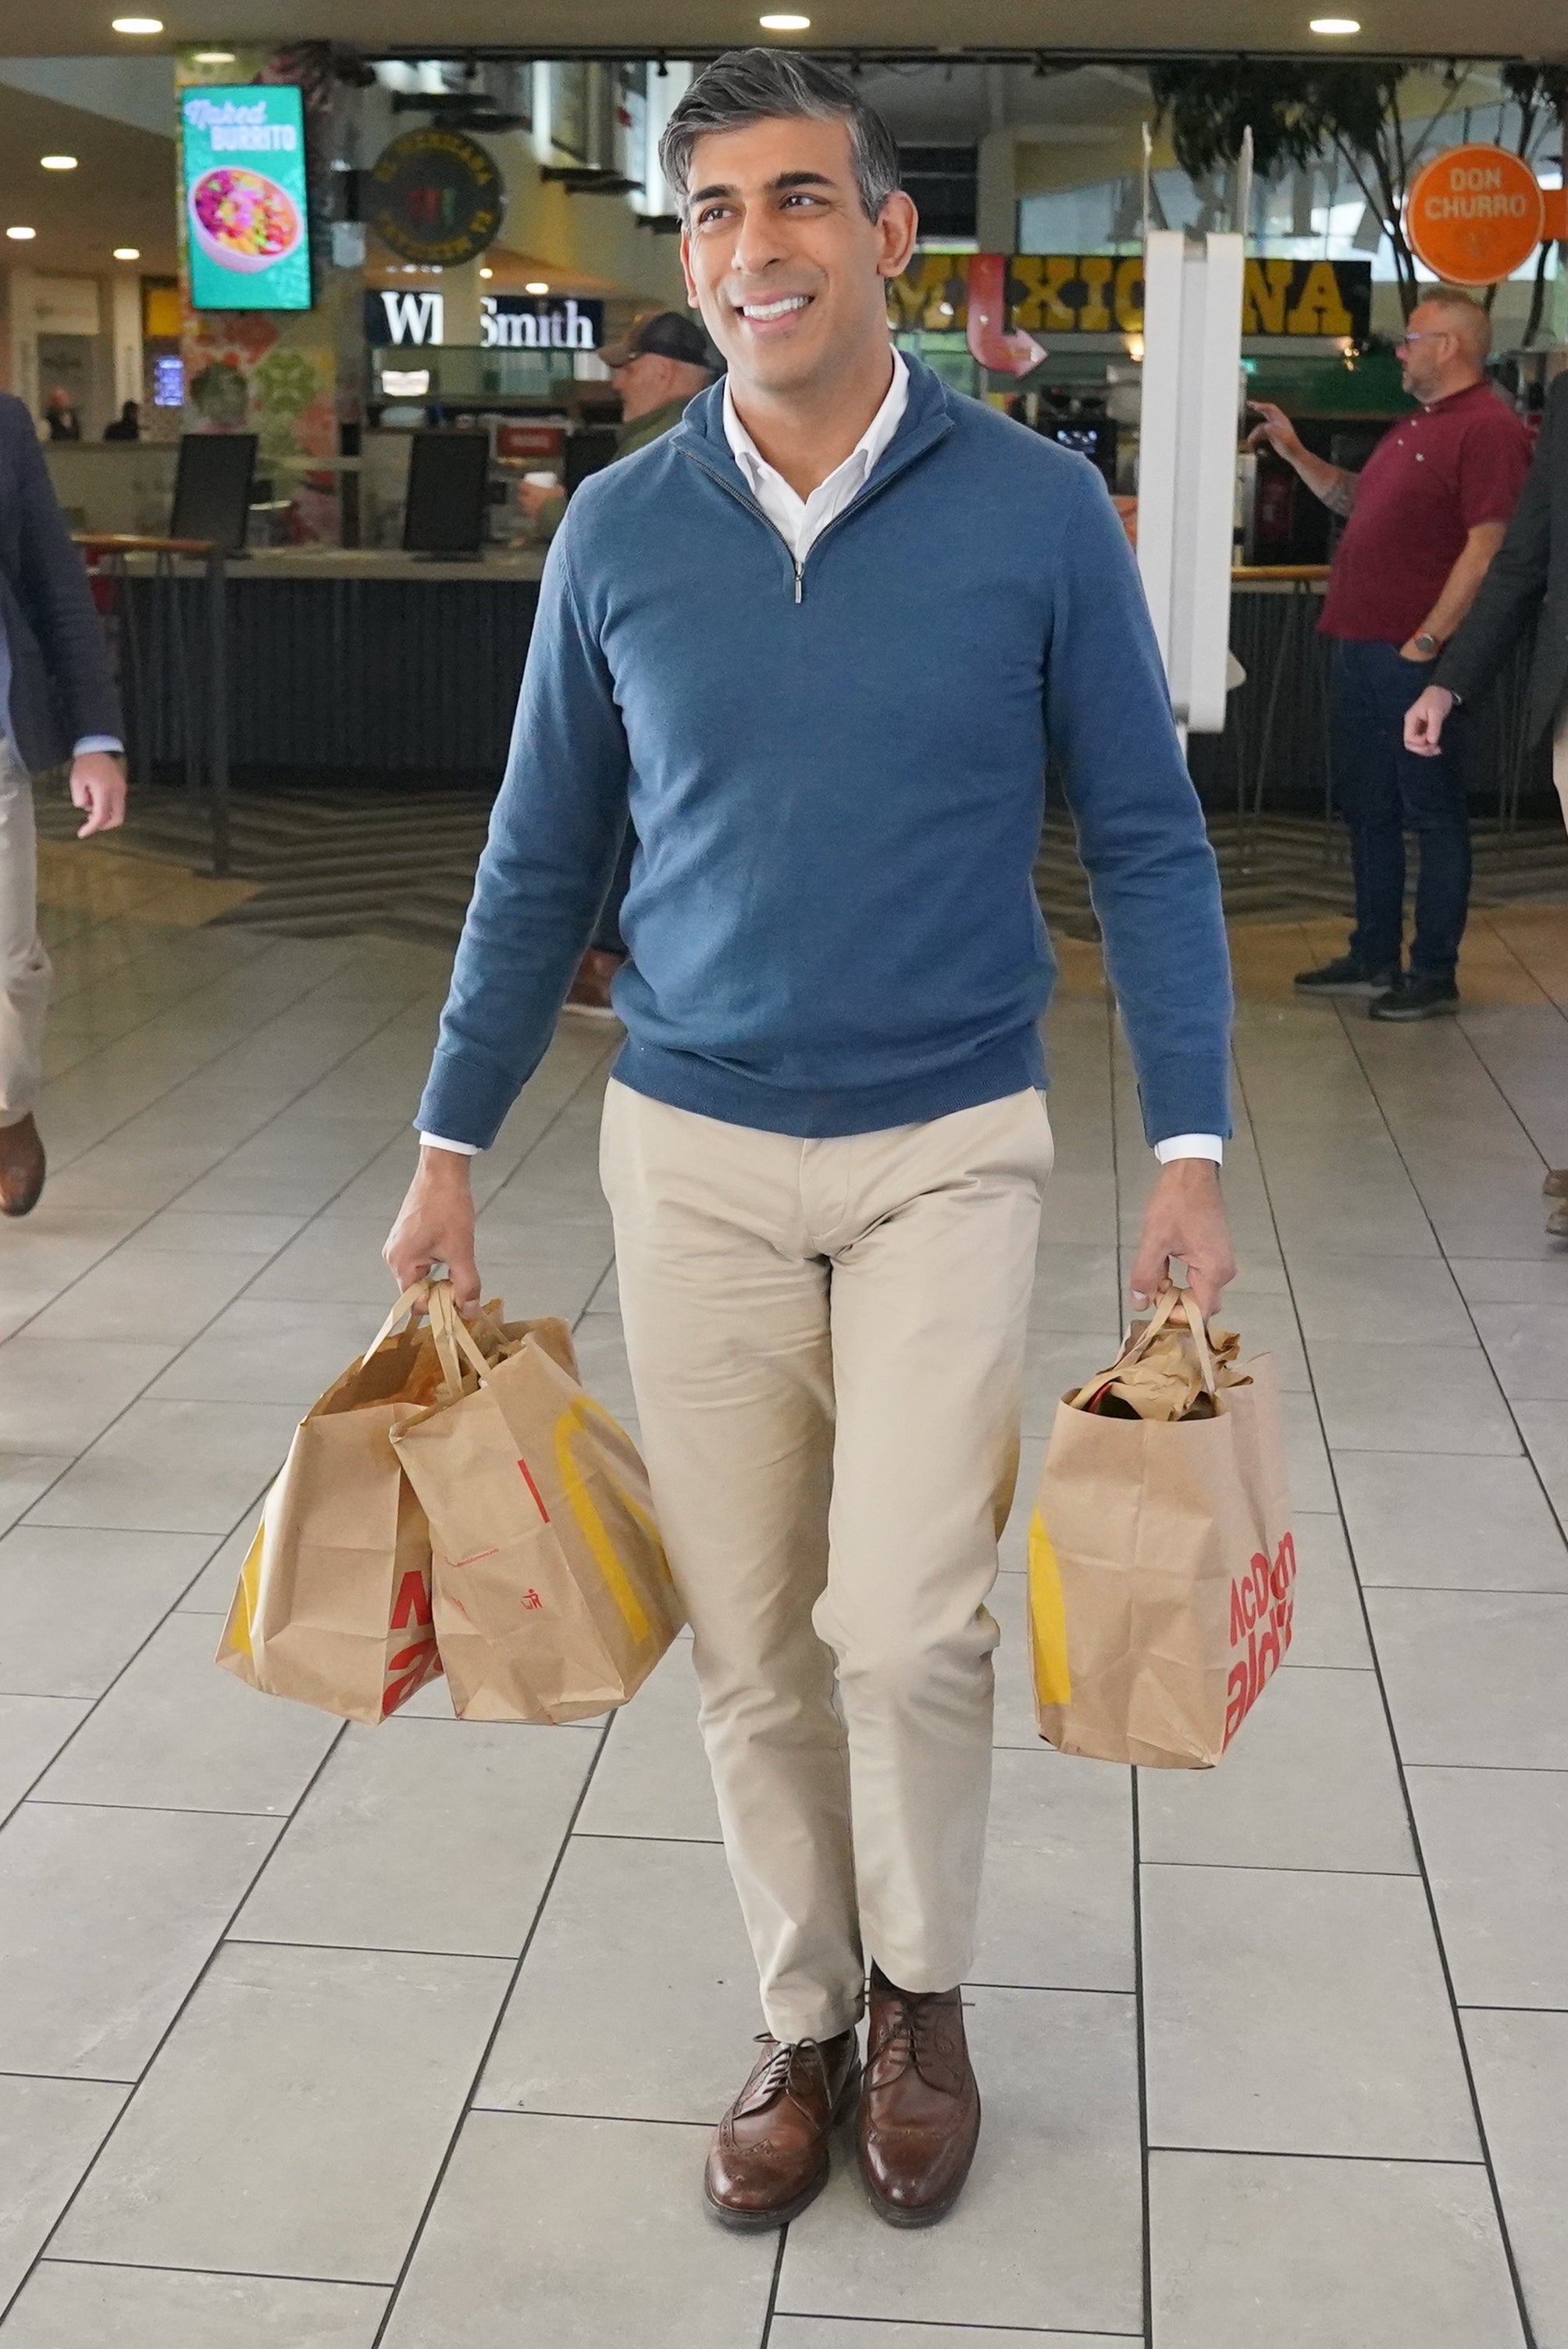 Rishi Sunak emerged from McDonald’s with several bags (Jonathan Brady/PA)